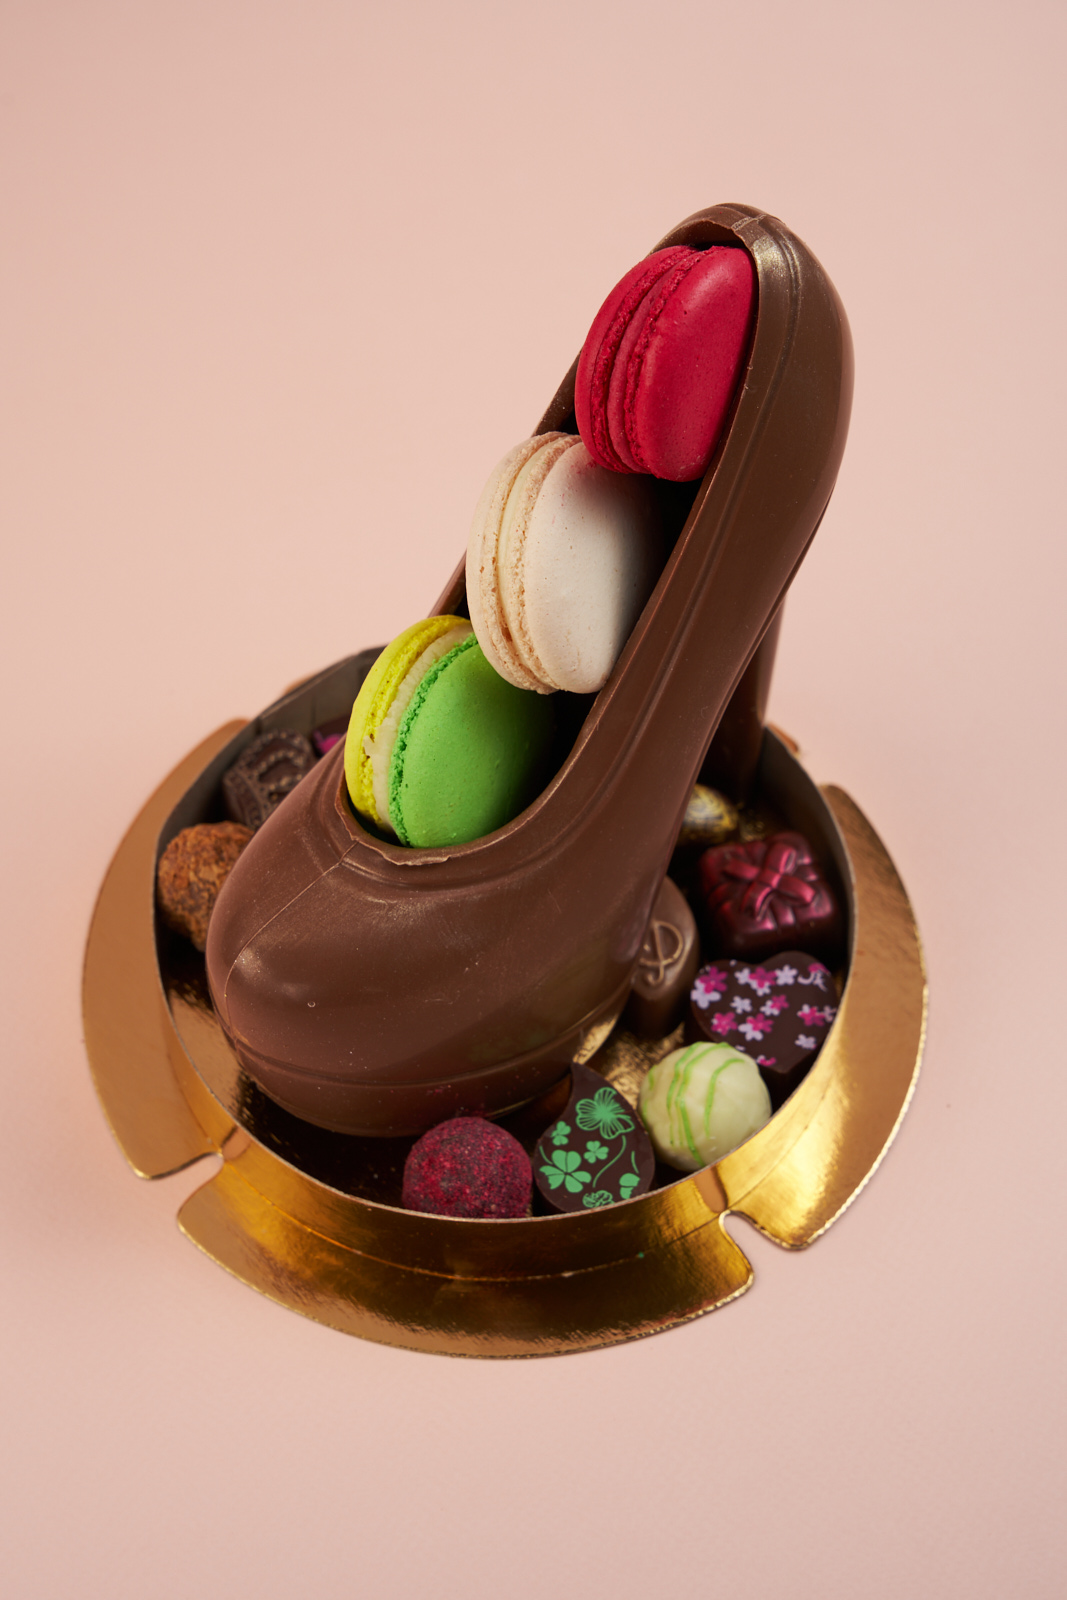 Шоколадная фигура Лабутен с макарони и конфетами